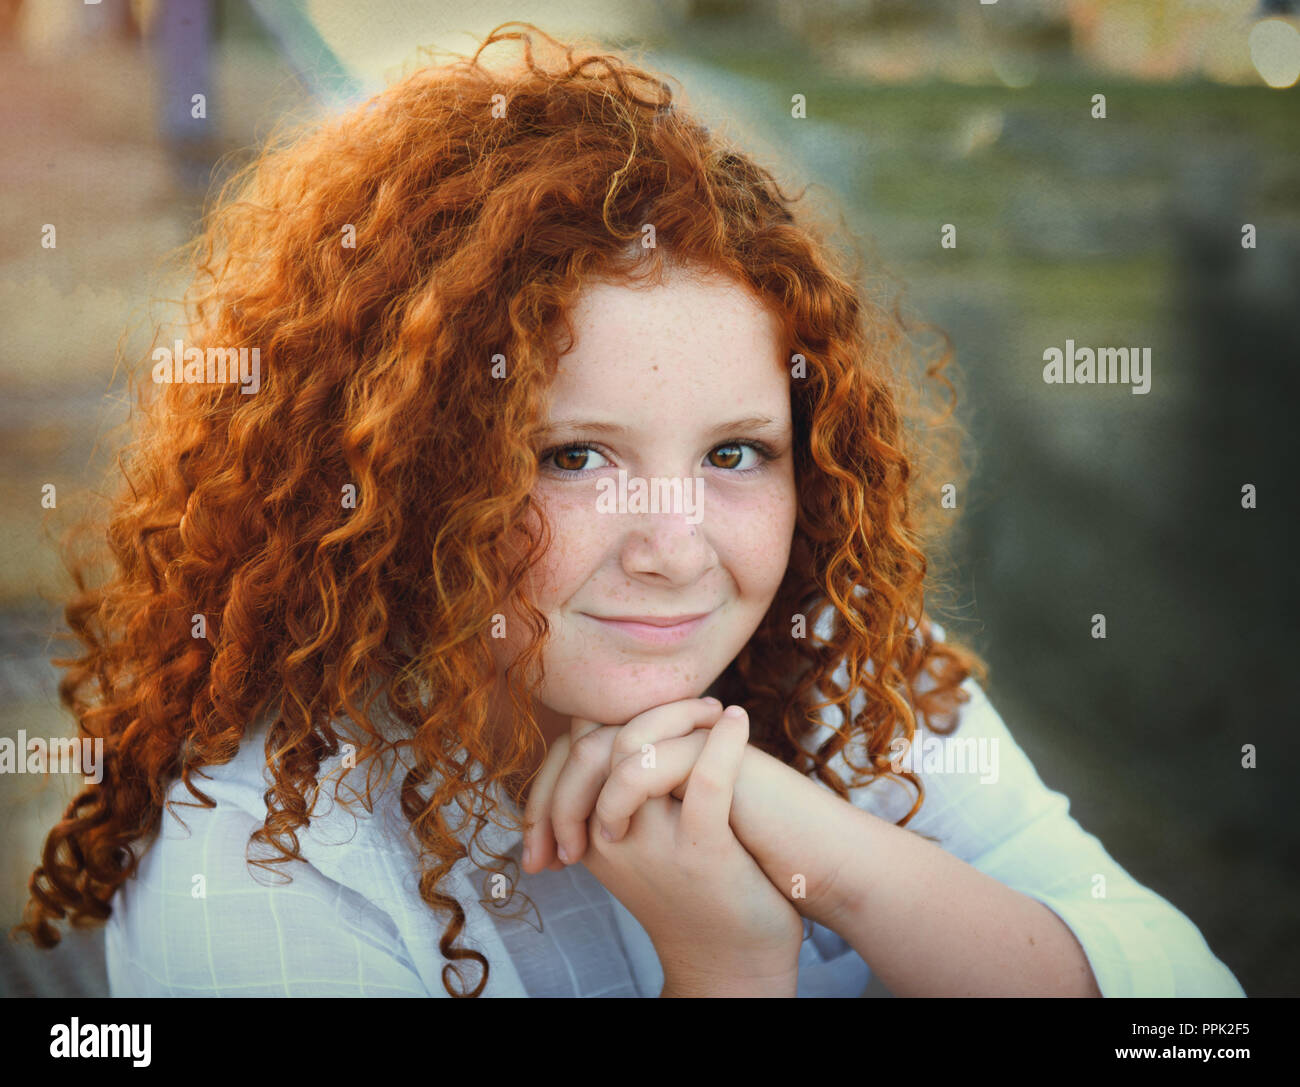 Pretty redhead giovane ragazza con i capelli ricci ritratto all'aperto Foto Stock